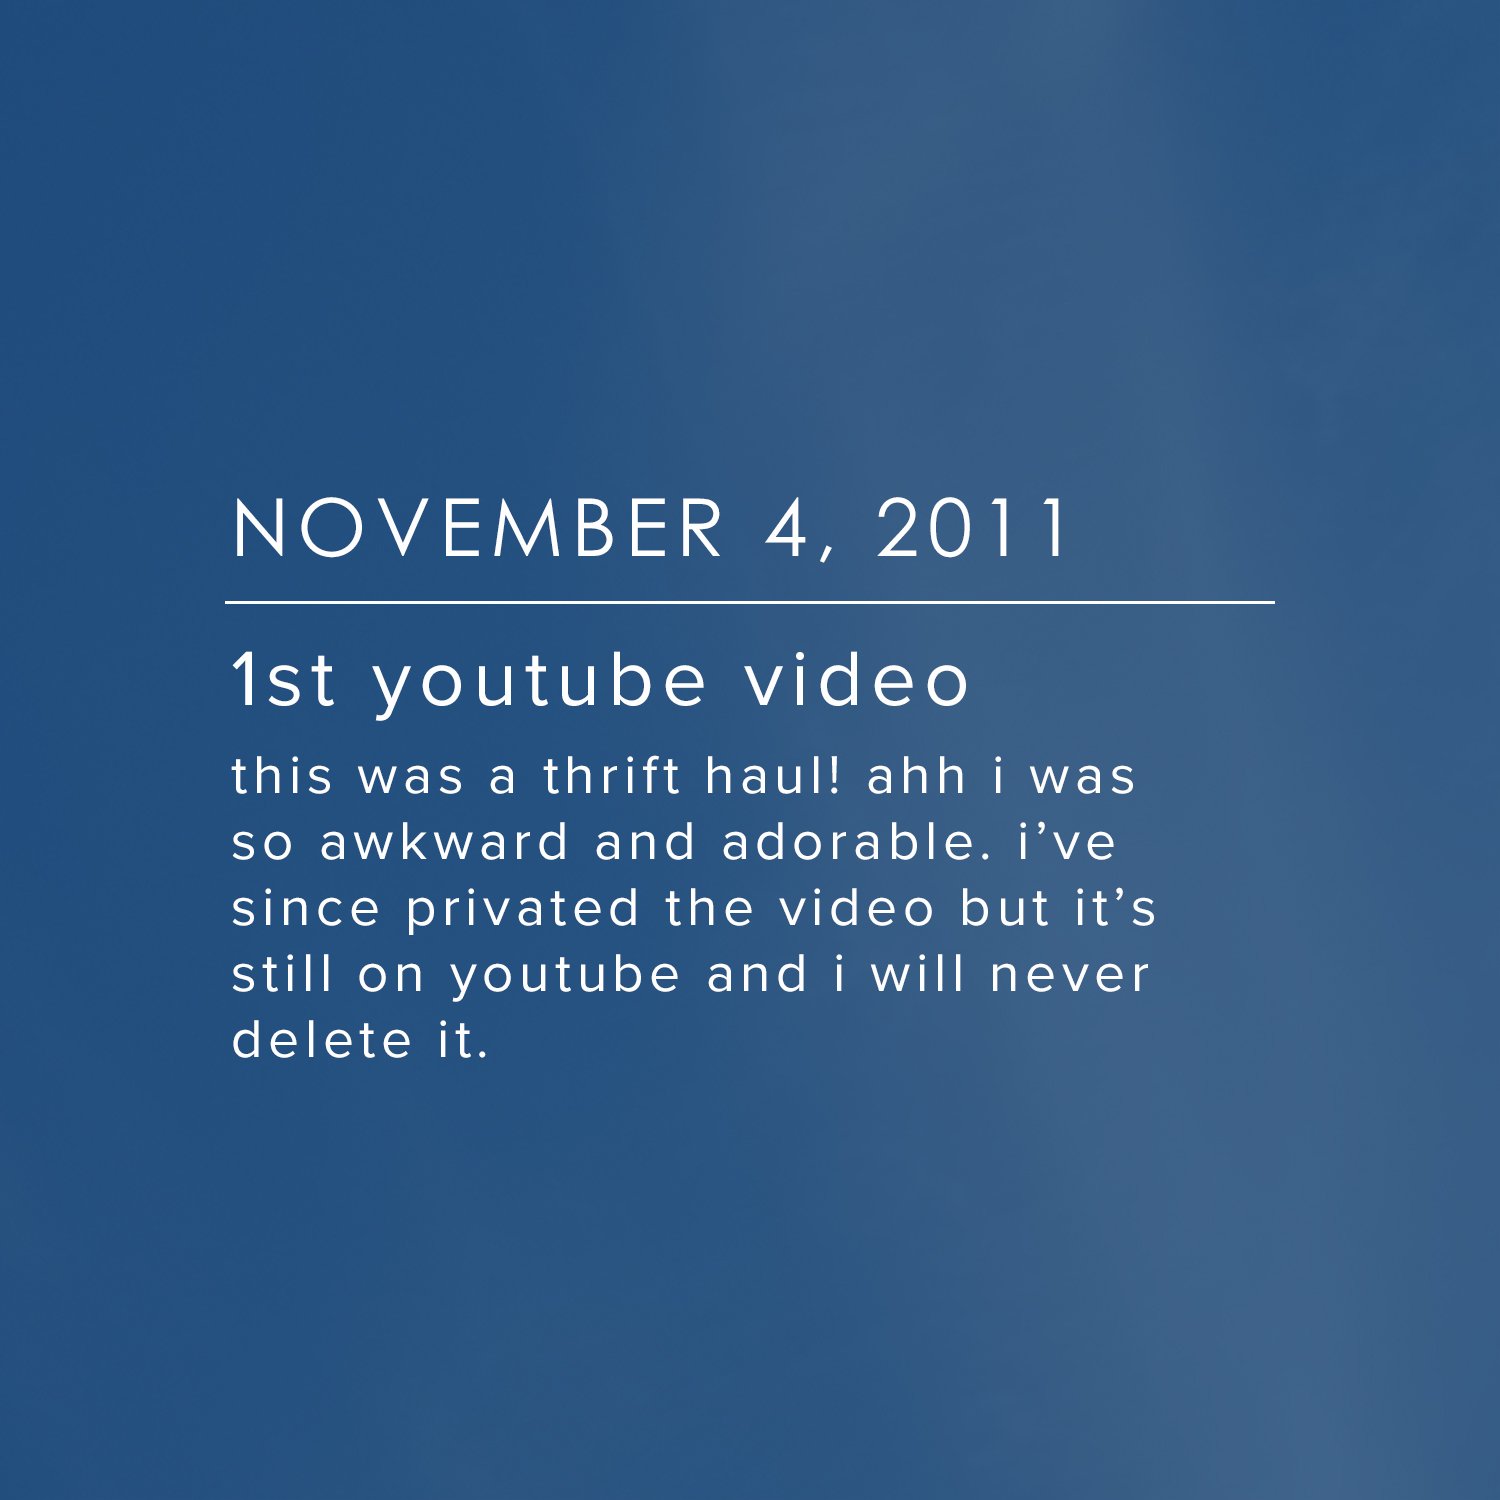 November 4, 2011 - 1st youtube video